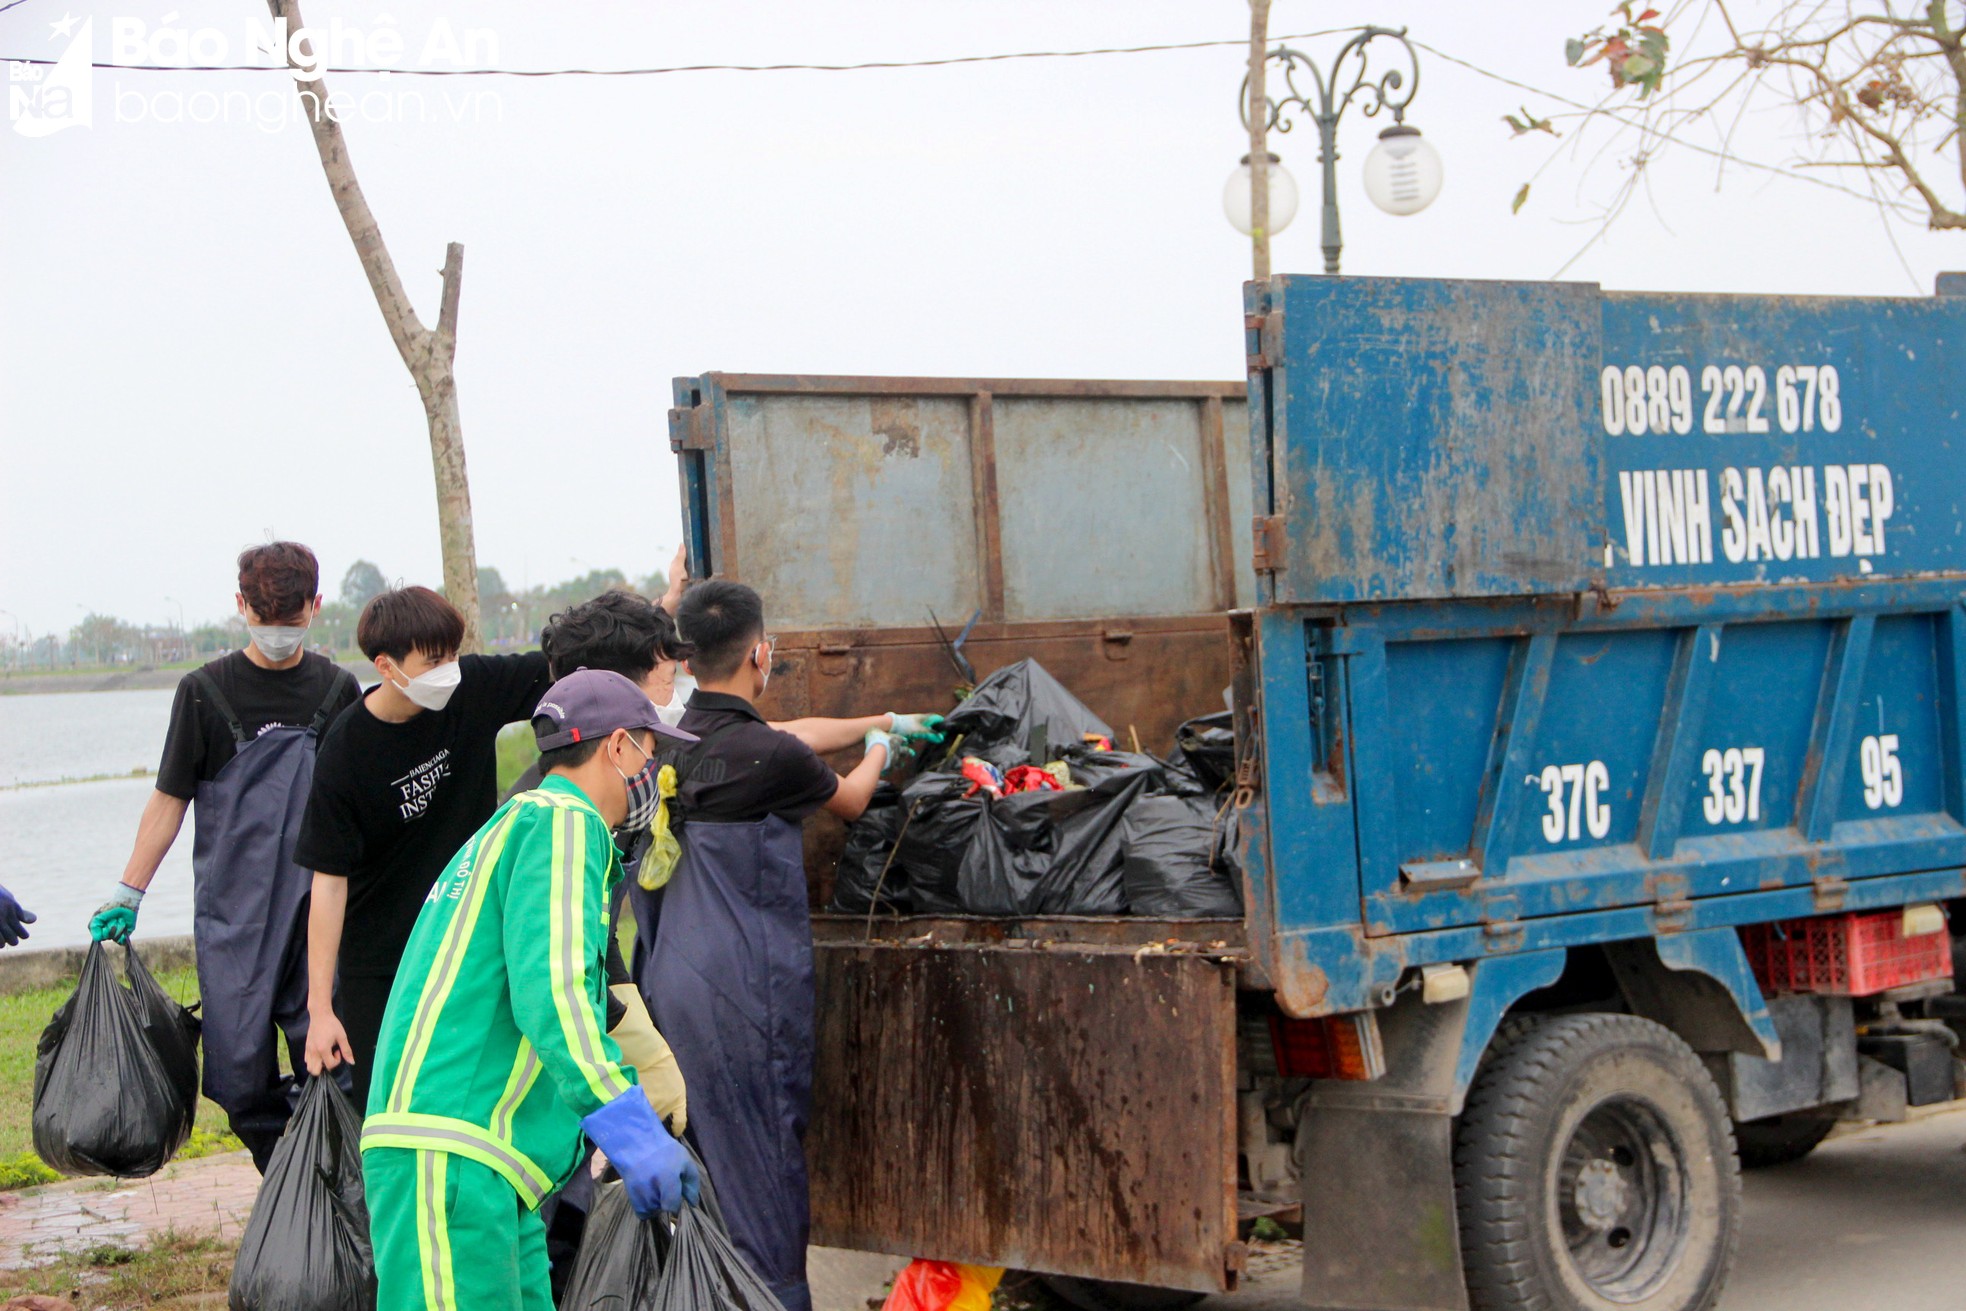 Nghệ An Xanh - Nhóm bạn trẻ gen Z tình nguyện dọn rác, làm sạch môi trường - Ảnh 6.